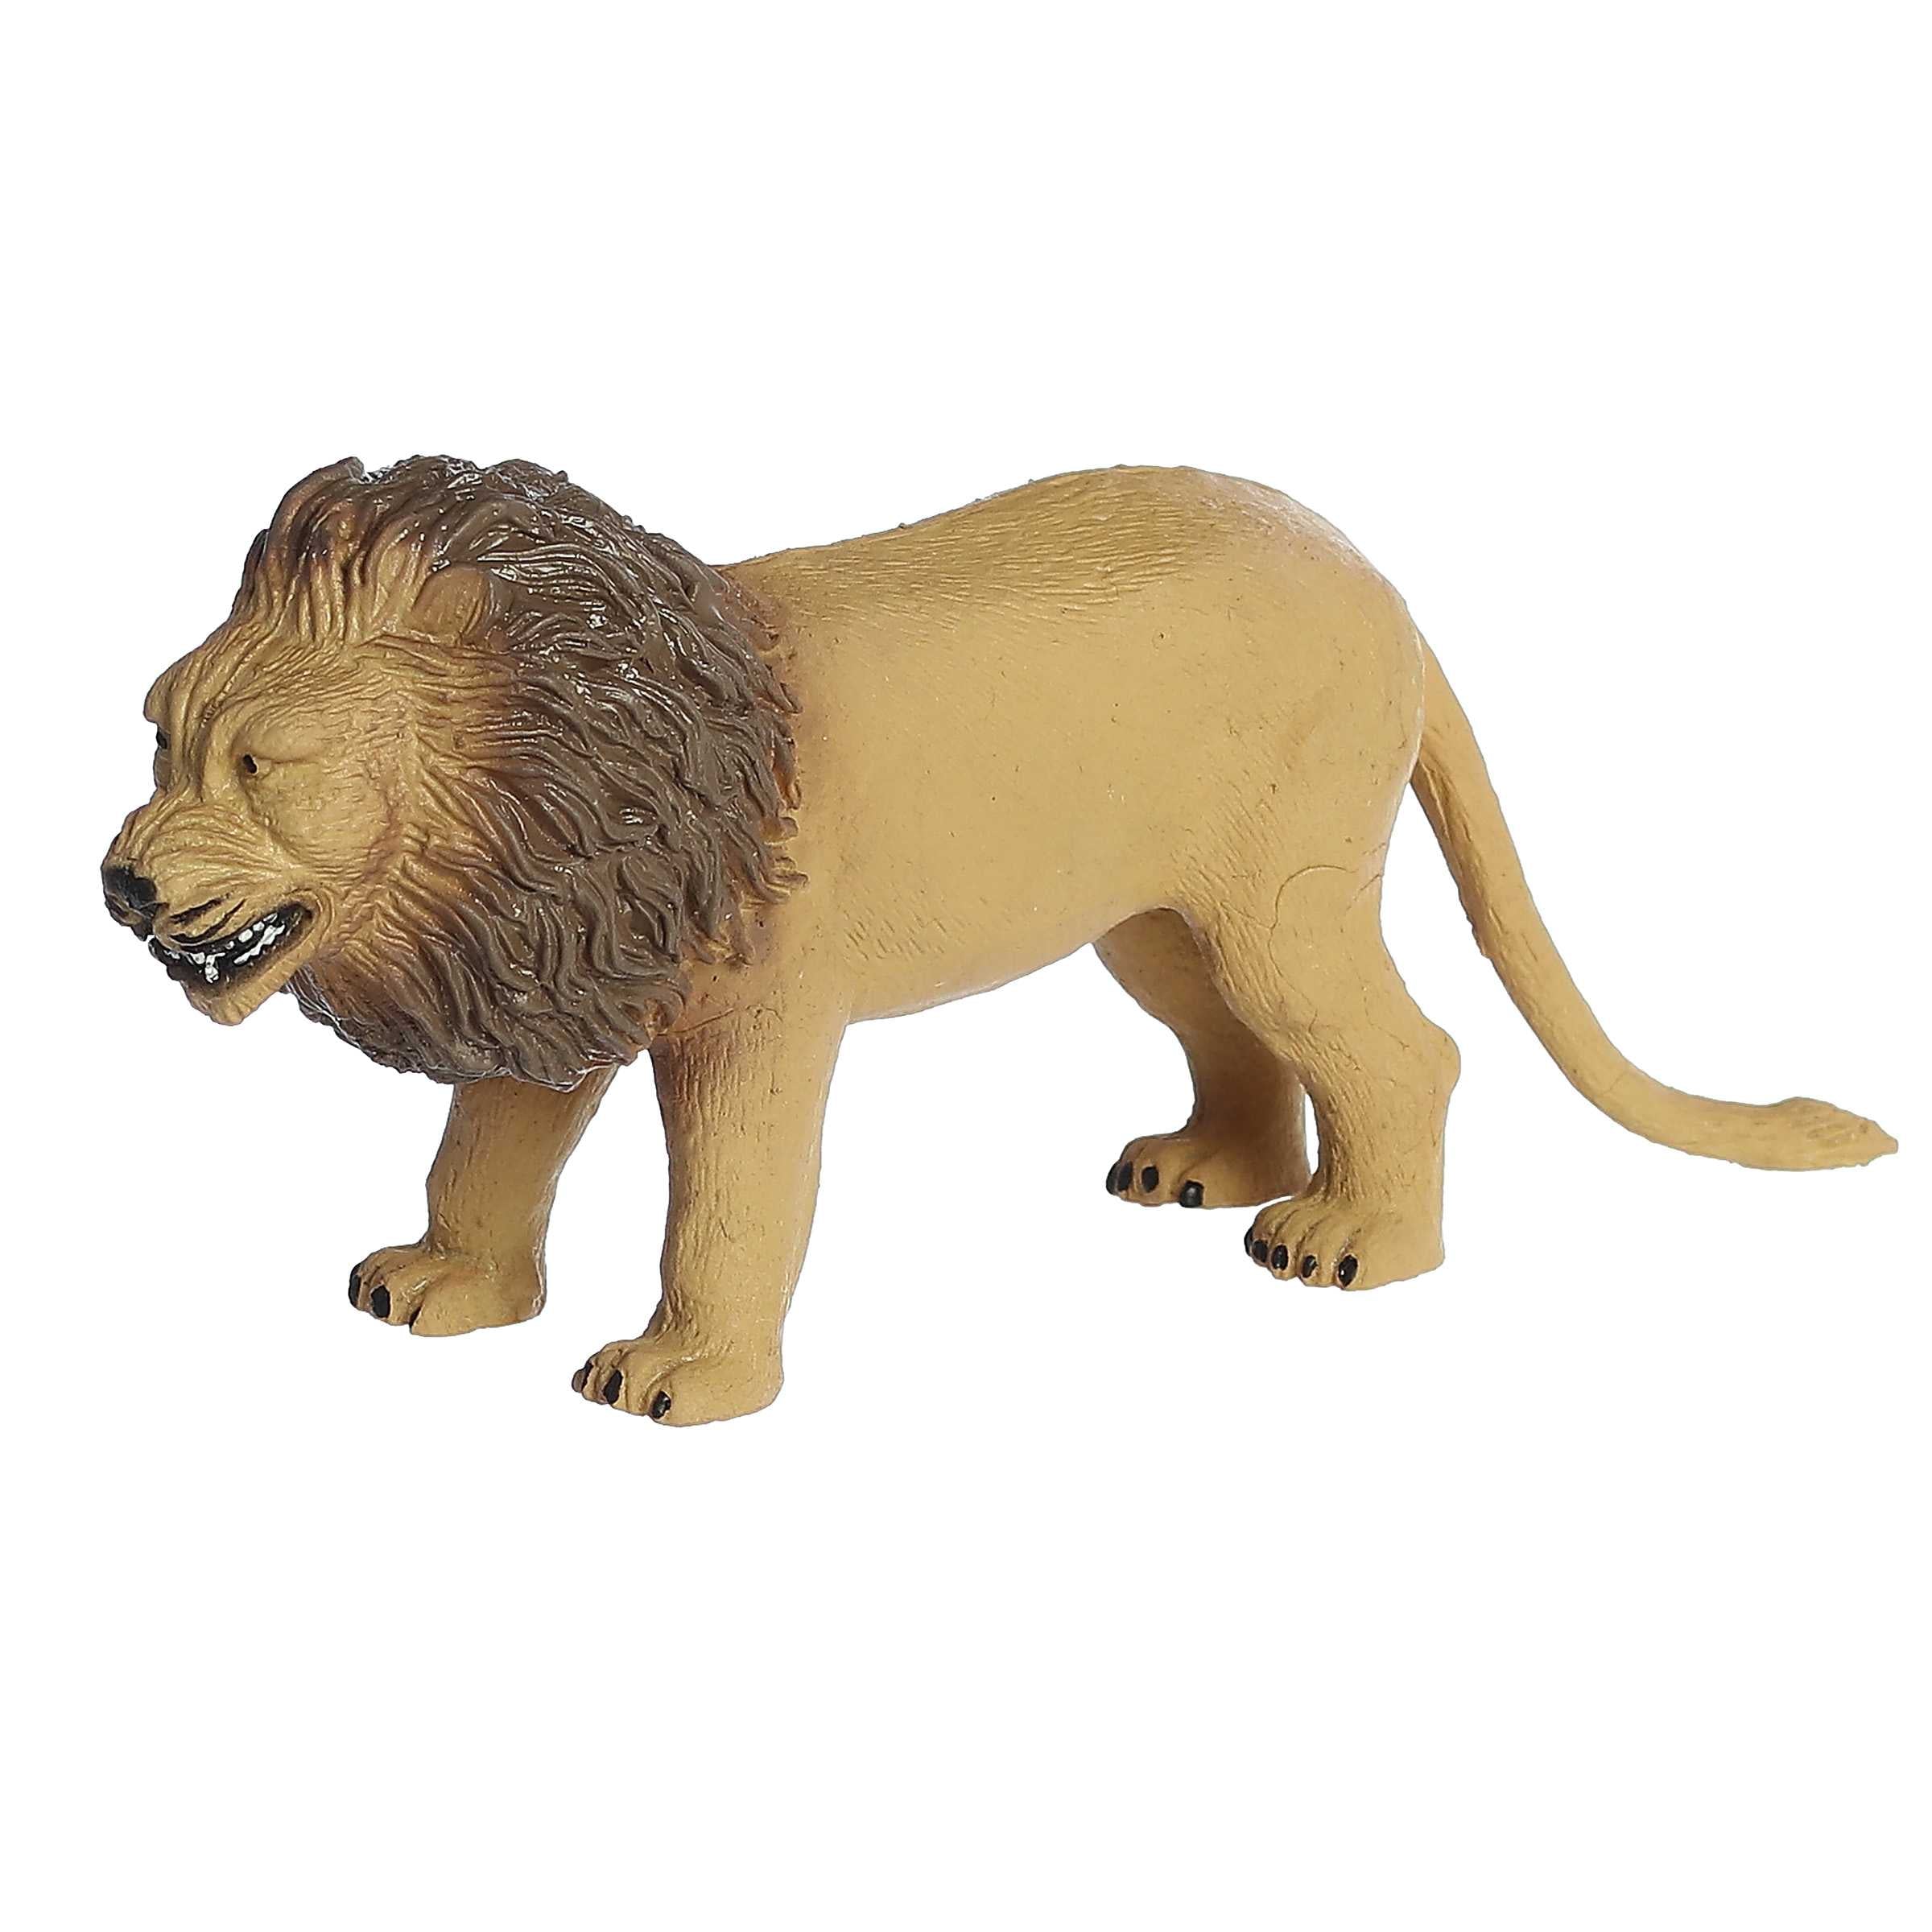 Aurora® Toys - Habitat™ - Lion Squish Animal